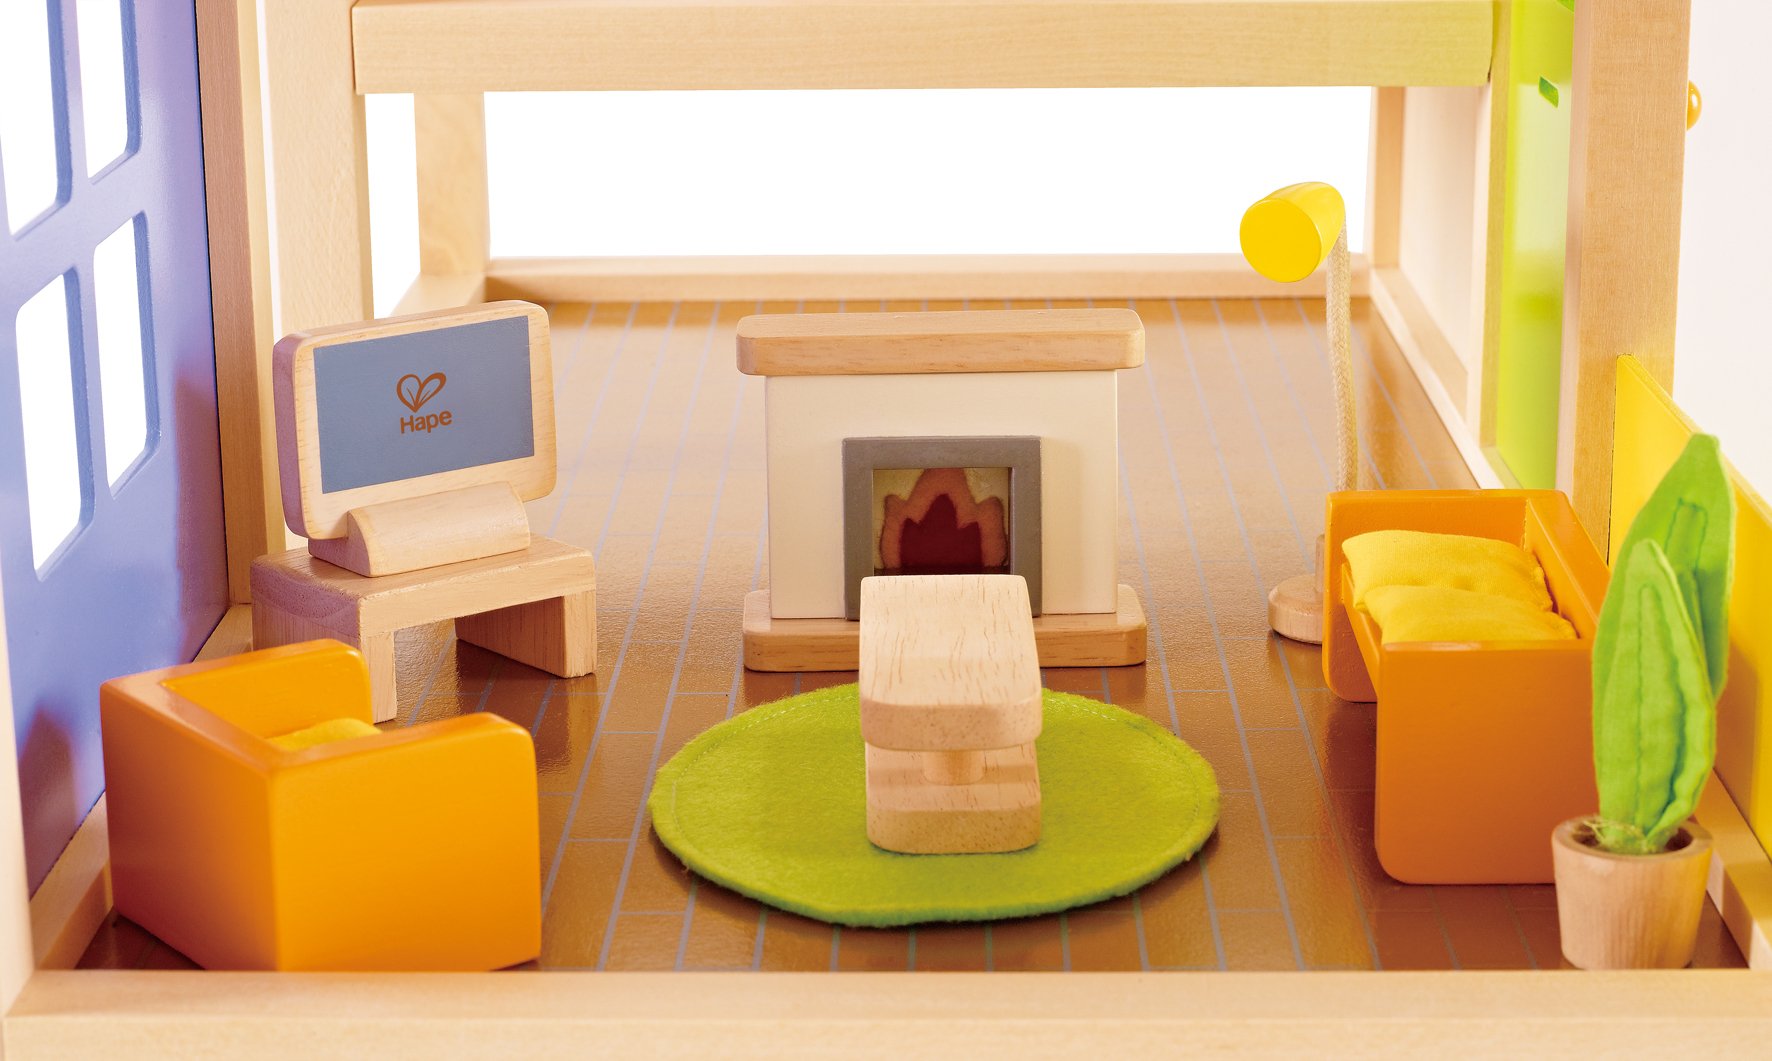 Hape Wooden Doll House Furniture Media Room Set